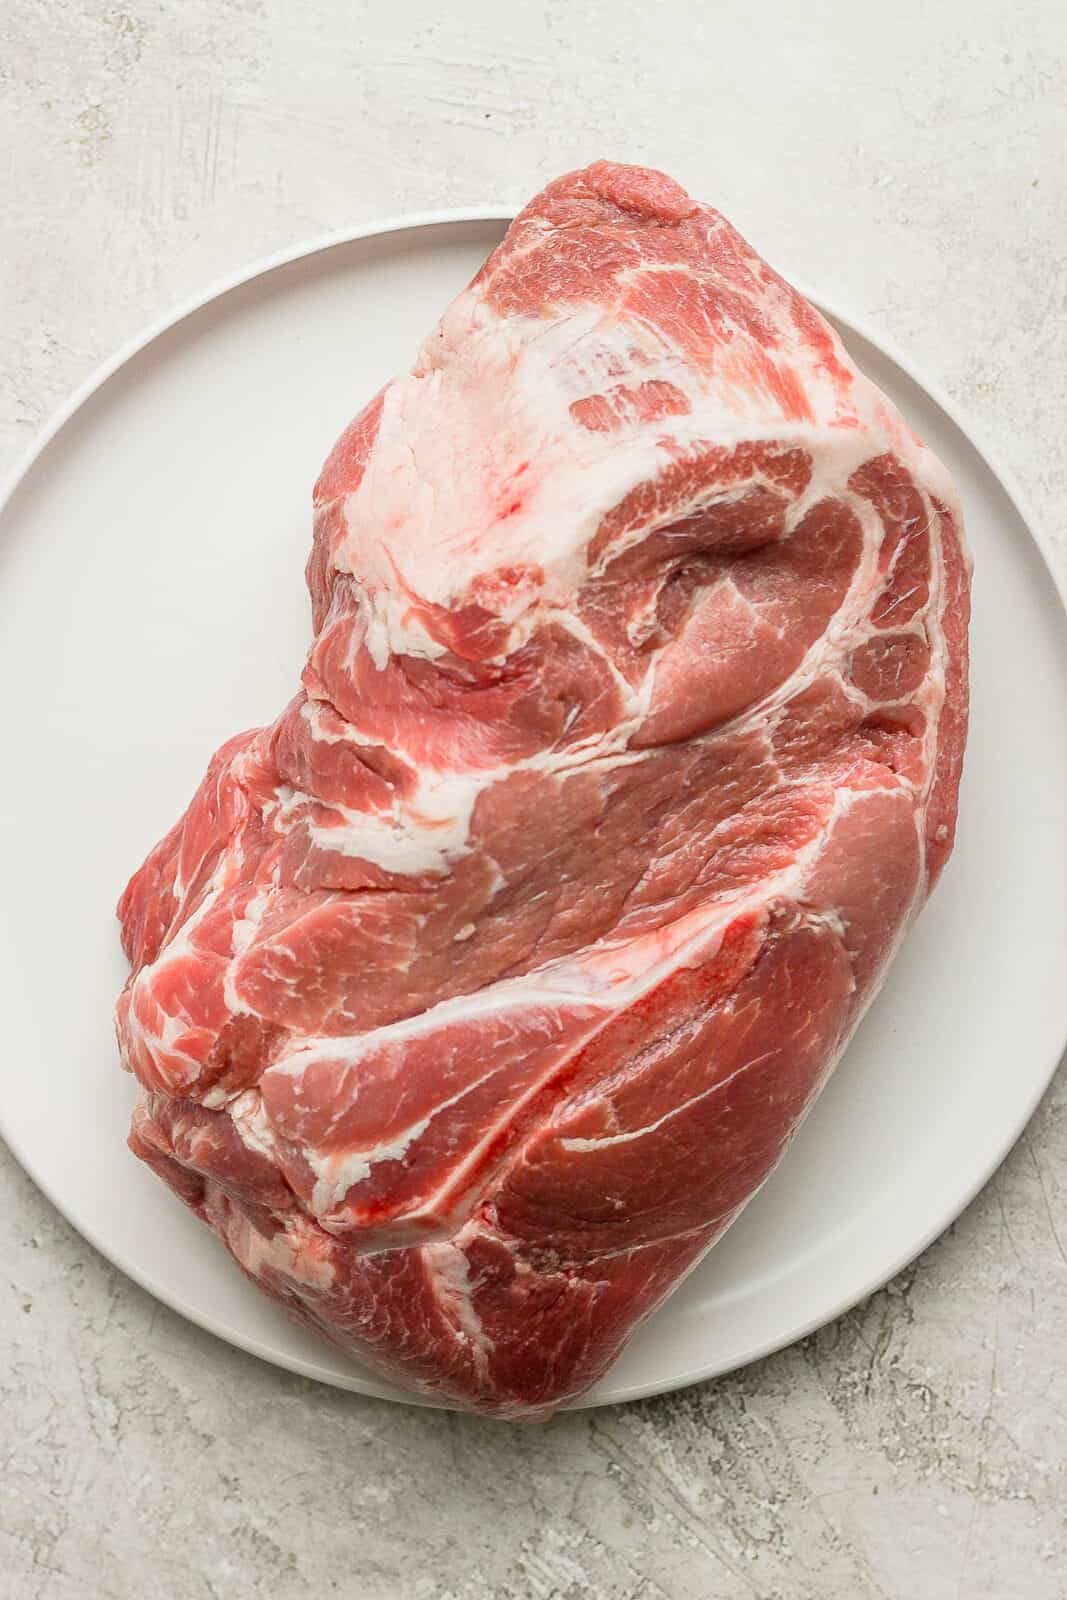 A raw bone-in pork shoulder on a plate.